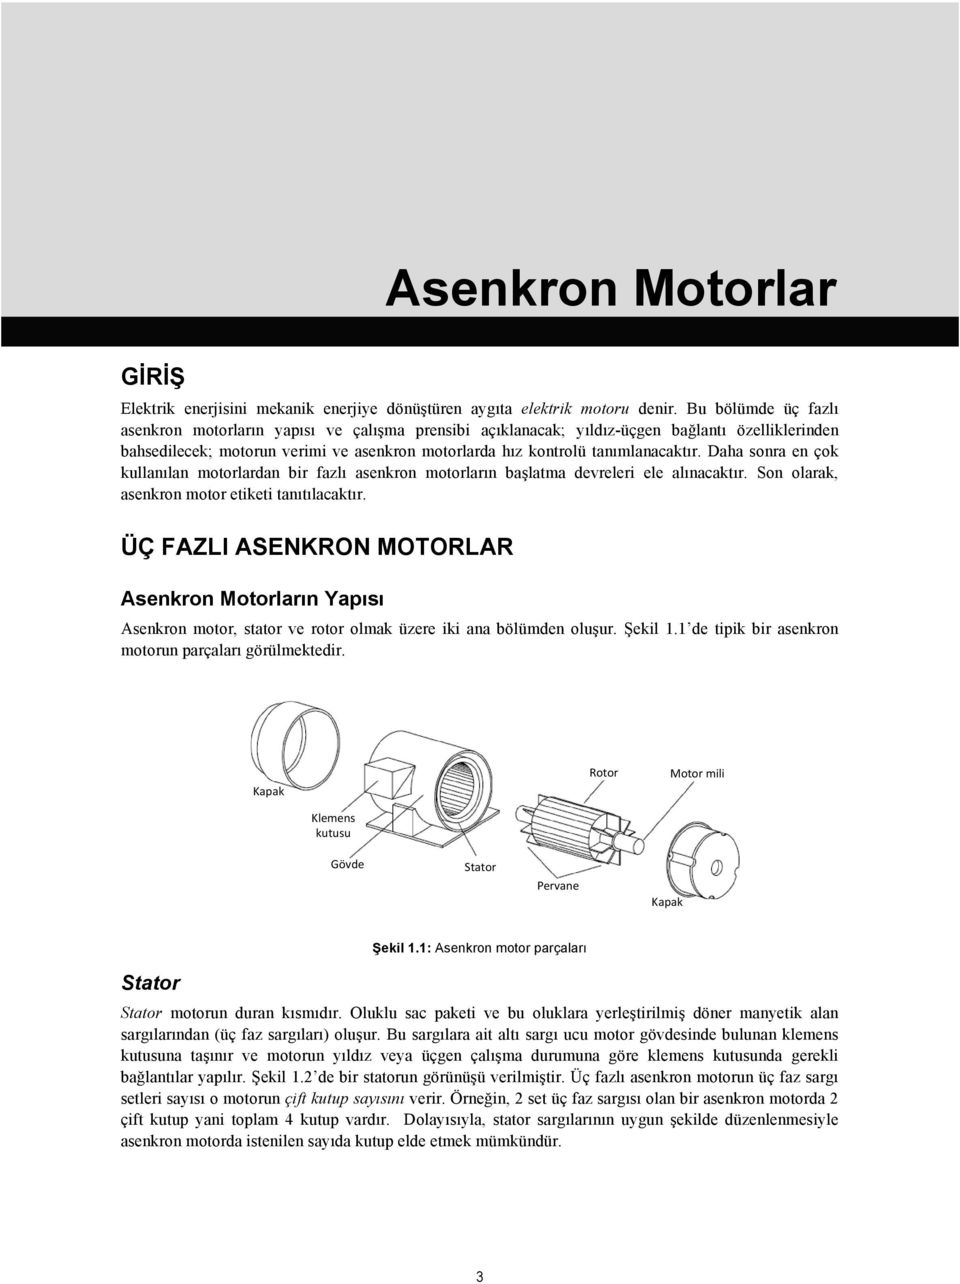 Daha sonra en çok kullanılan motorlardan bir fazlı asenkron motorların başlatma devreleri ele alınacaktır. Son olarak, asenkron motor etiketi tanıtılacaktır.